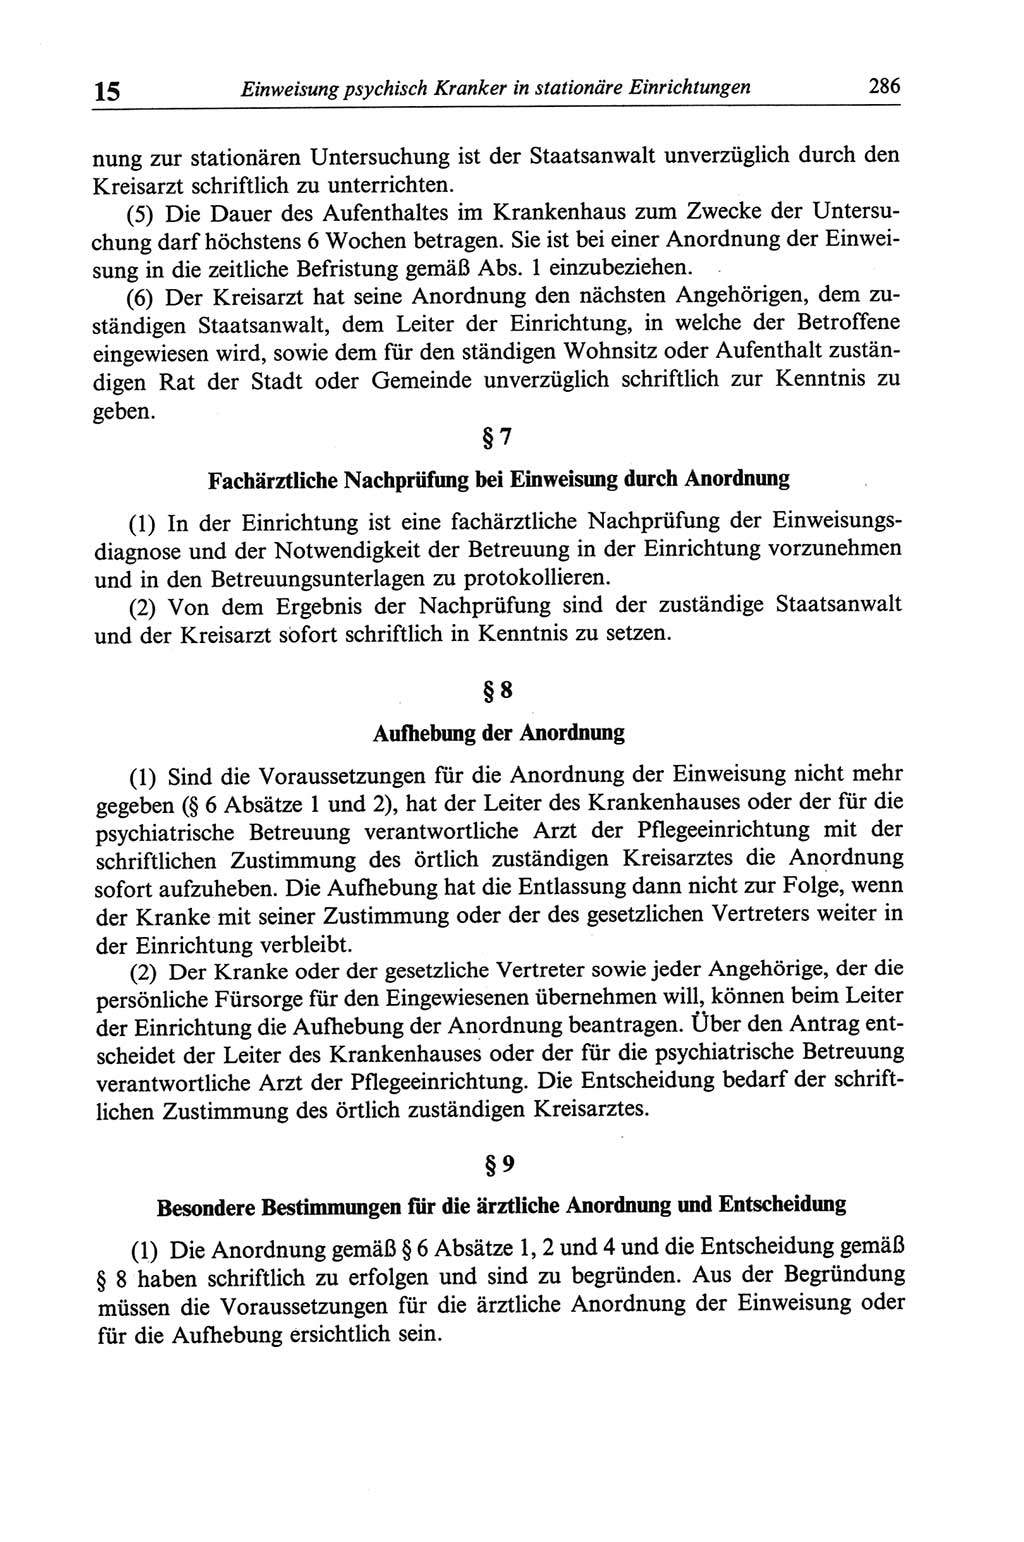 Strafgesetzbuch (StGB) der Deutschen Demokratischen Republik (DDR) und angrenzende Gesetze und Bestimmungen 1968, Seite 286 (StGB Ges. Best. DDR 1968, S. 286)